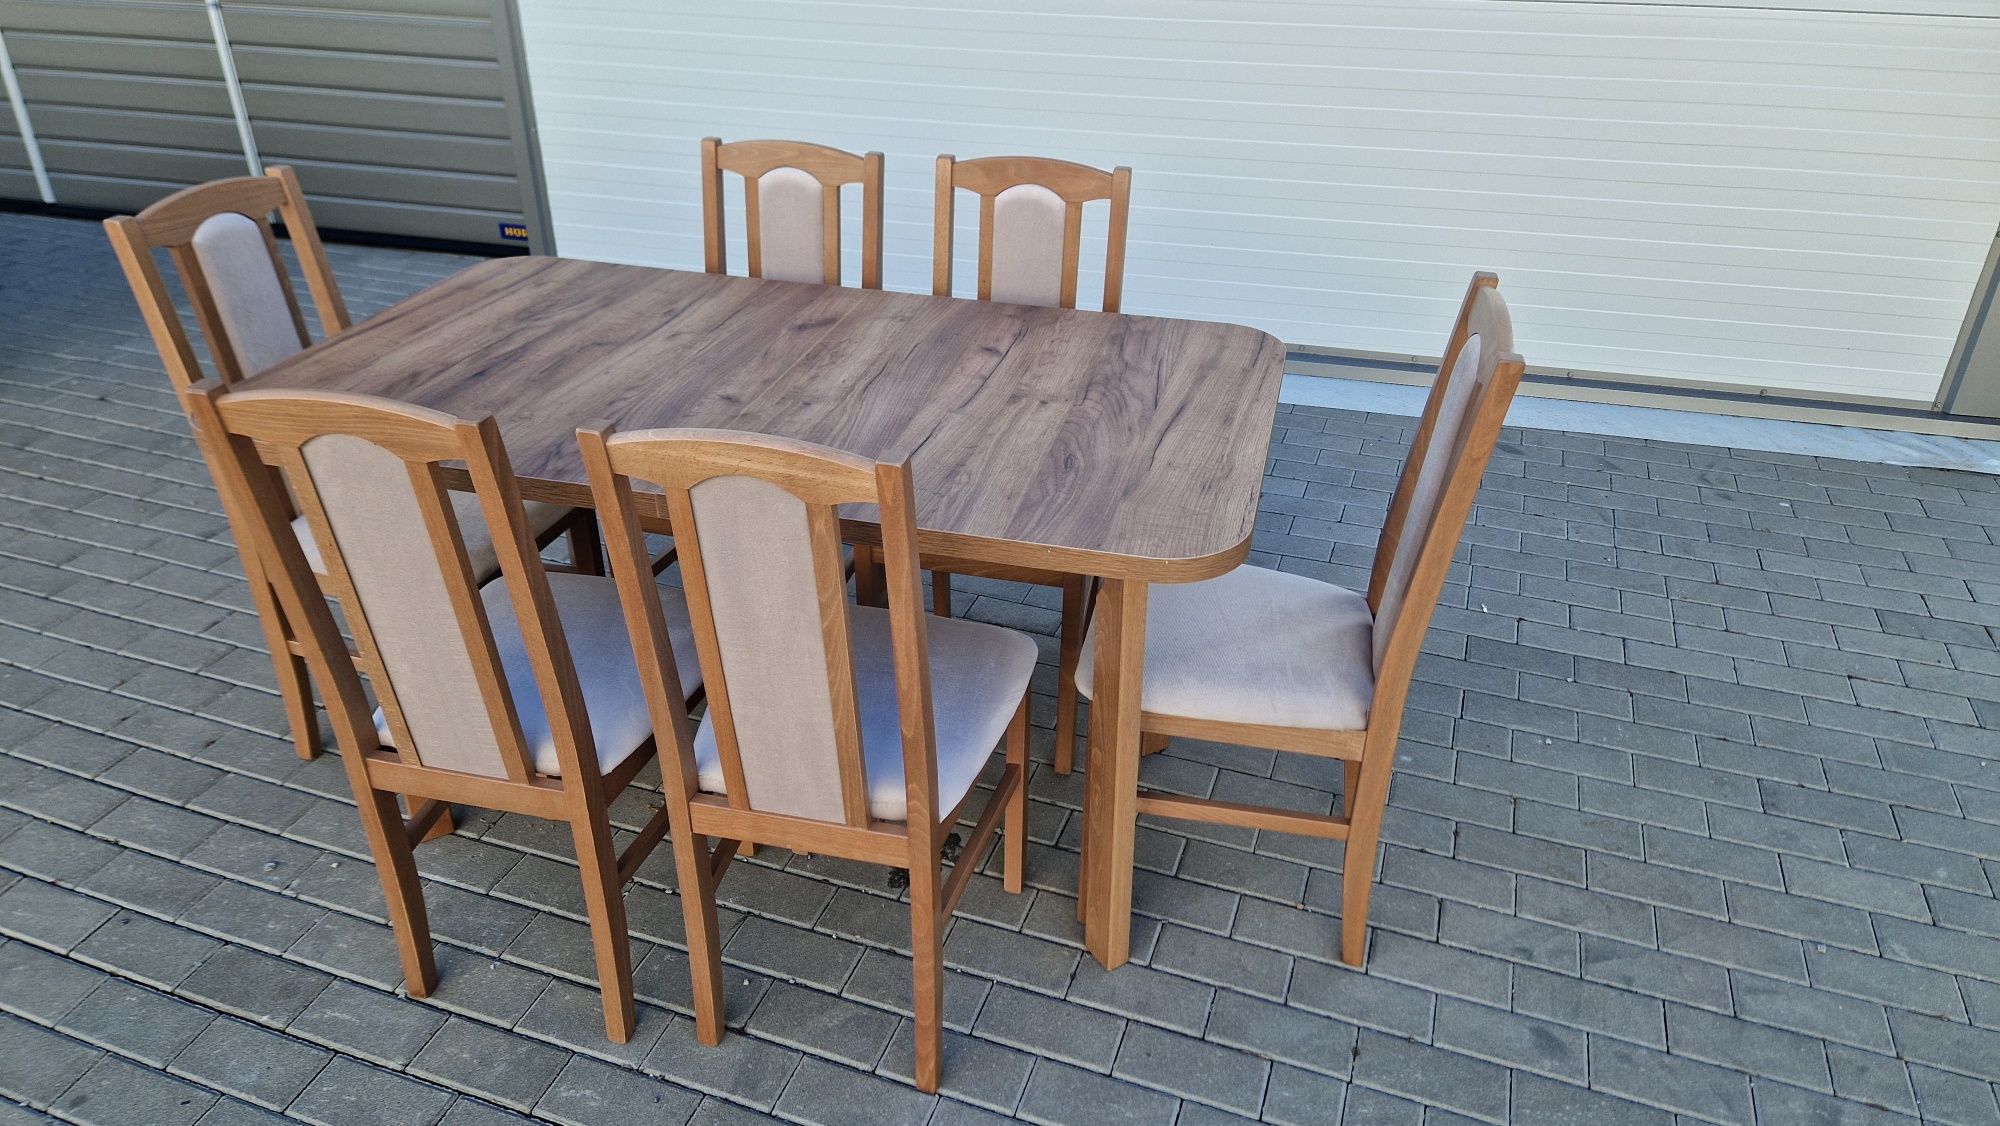 Nowe: Stół 80x140/180 + 6 krzeseł, ORZECH JASNY + LATTE, dostawa PL